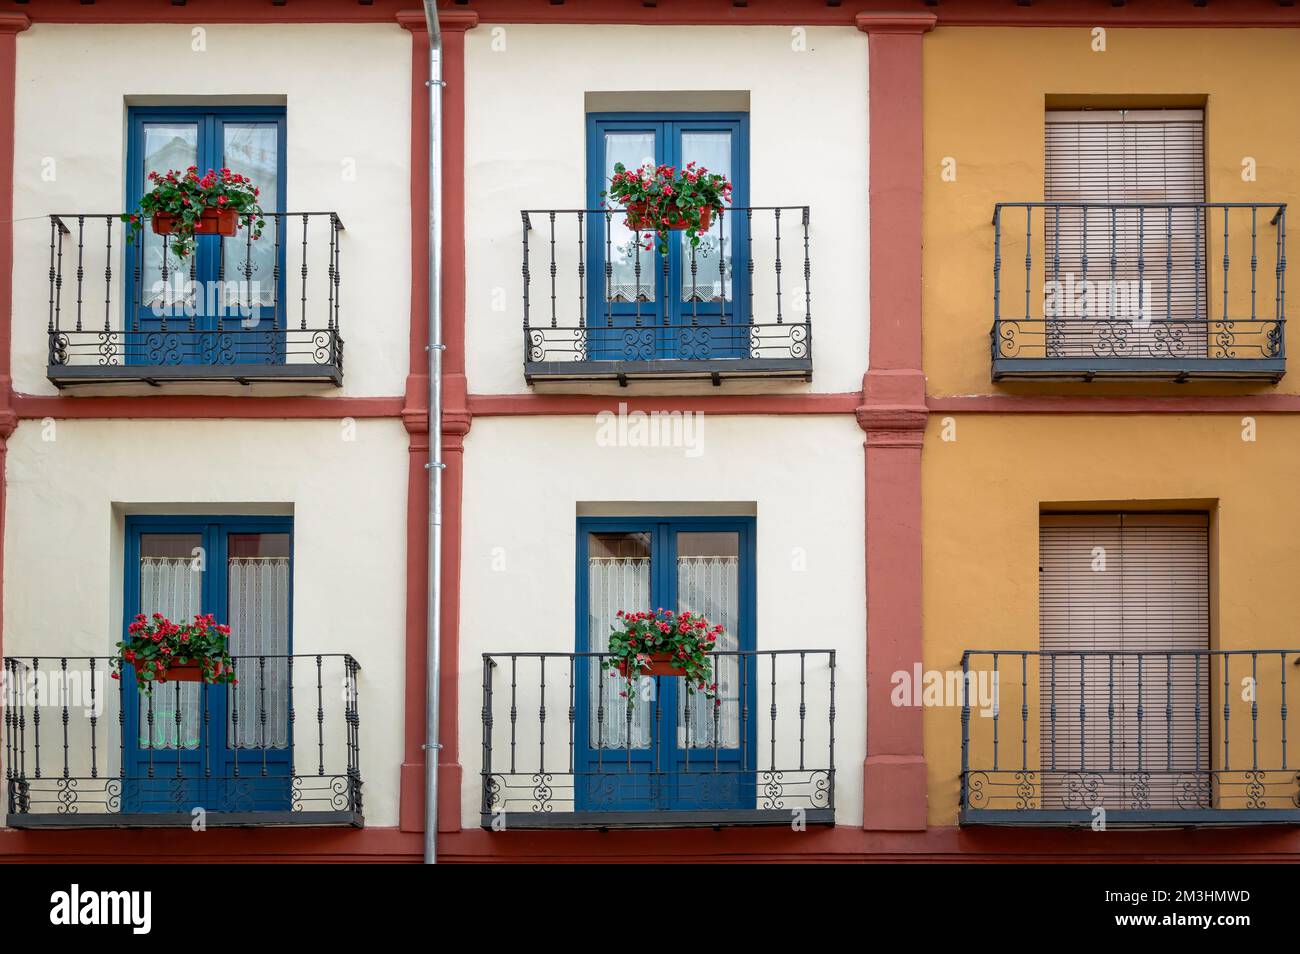 Façade colorée avec balcons en métal, Espagne Banque D'Images